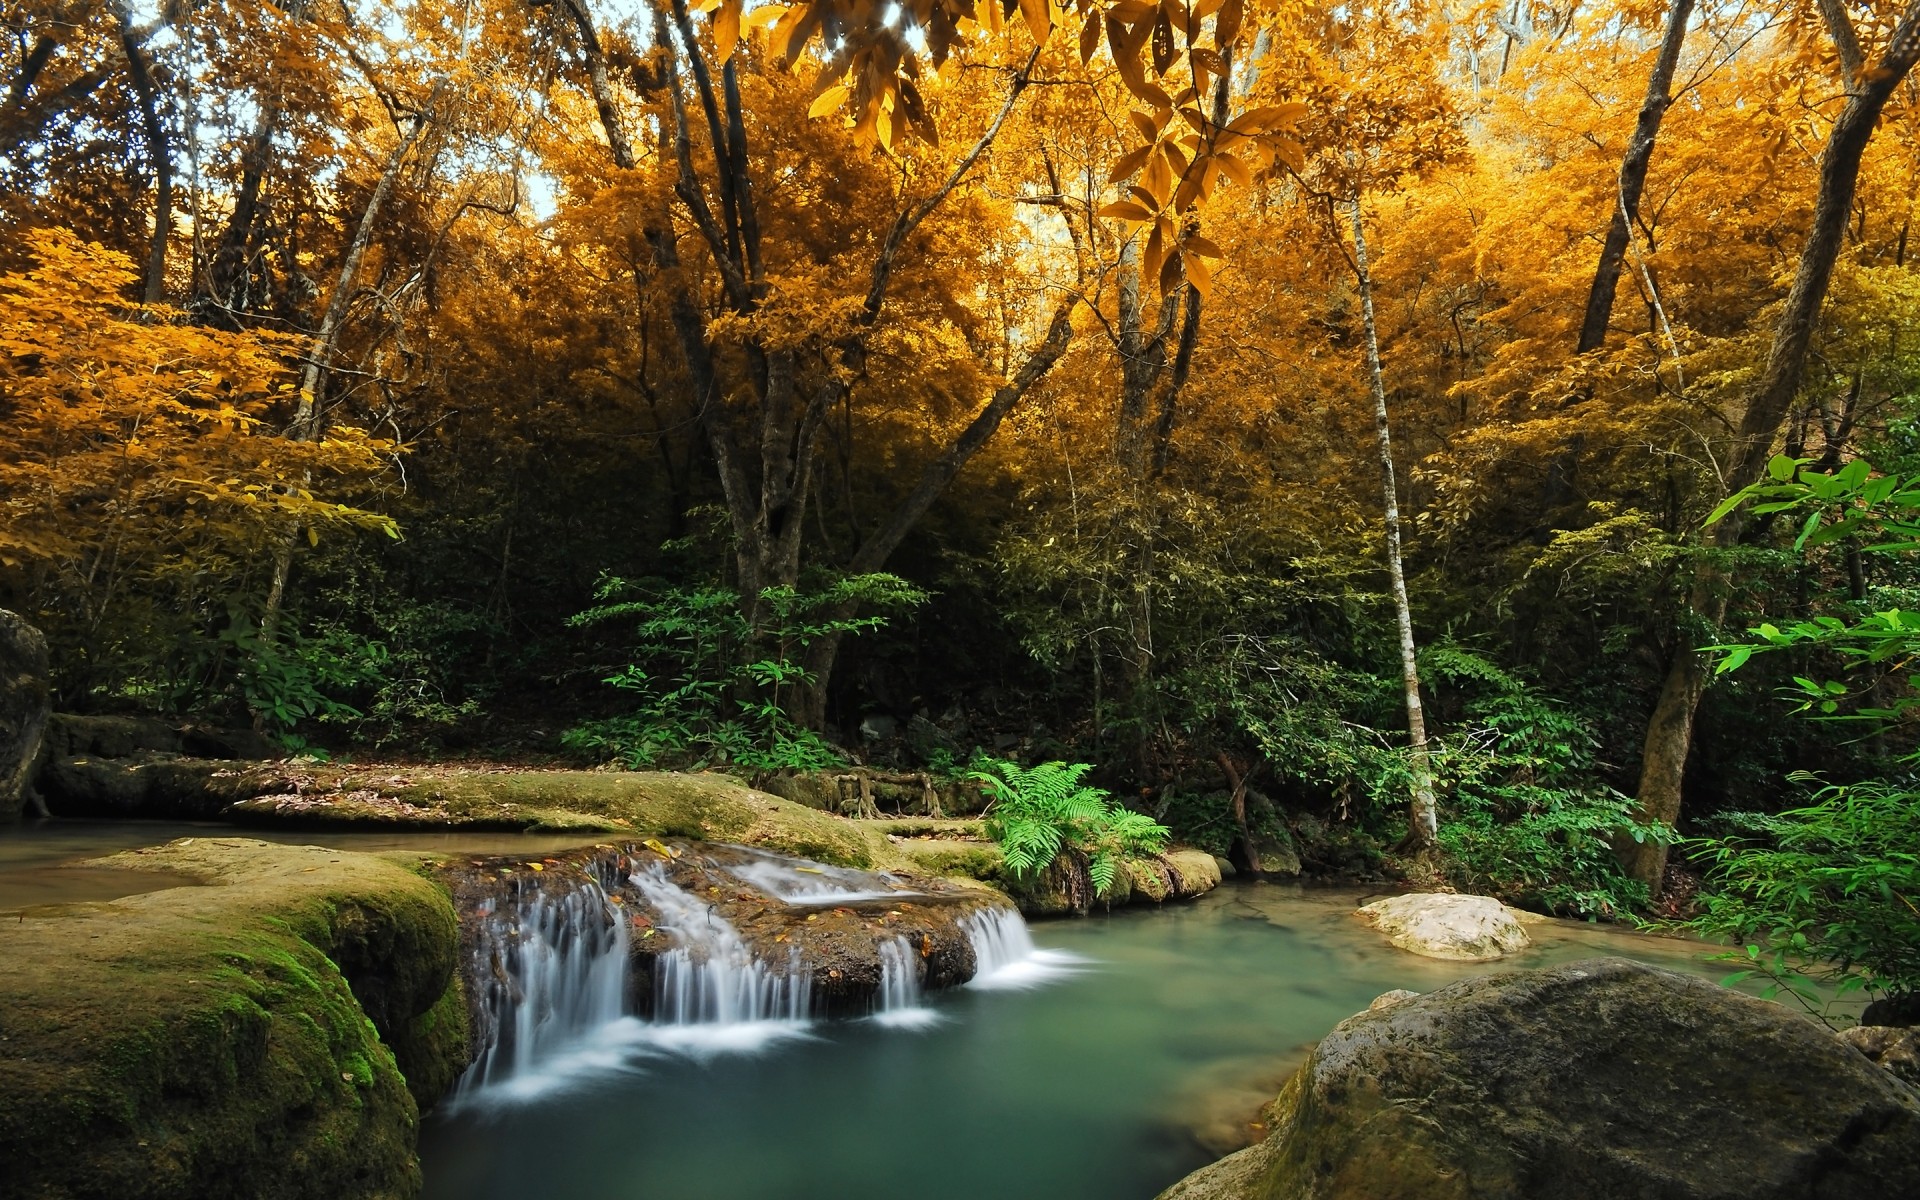 пейзажи древесины осень лист воды природа дерево пейзаж на открытом воздухе река живописный парк поток пышные путешествия среды водопад пейзажи крик лес осенний пейзаж дикие места